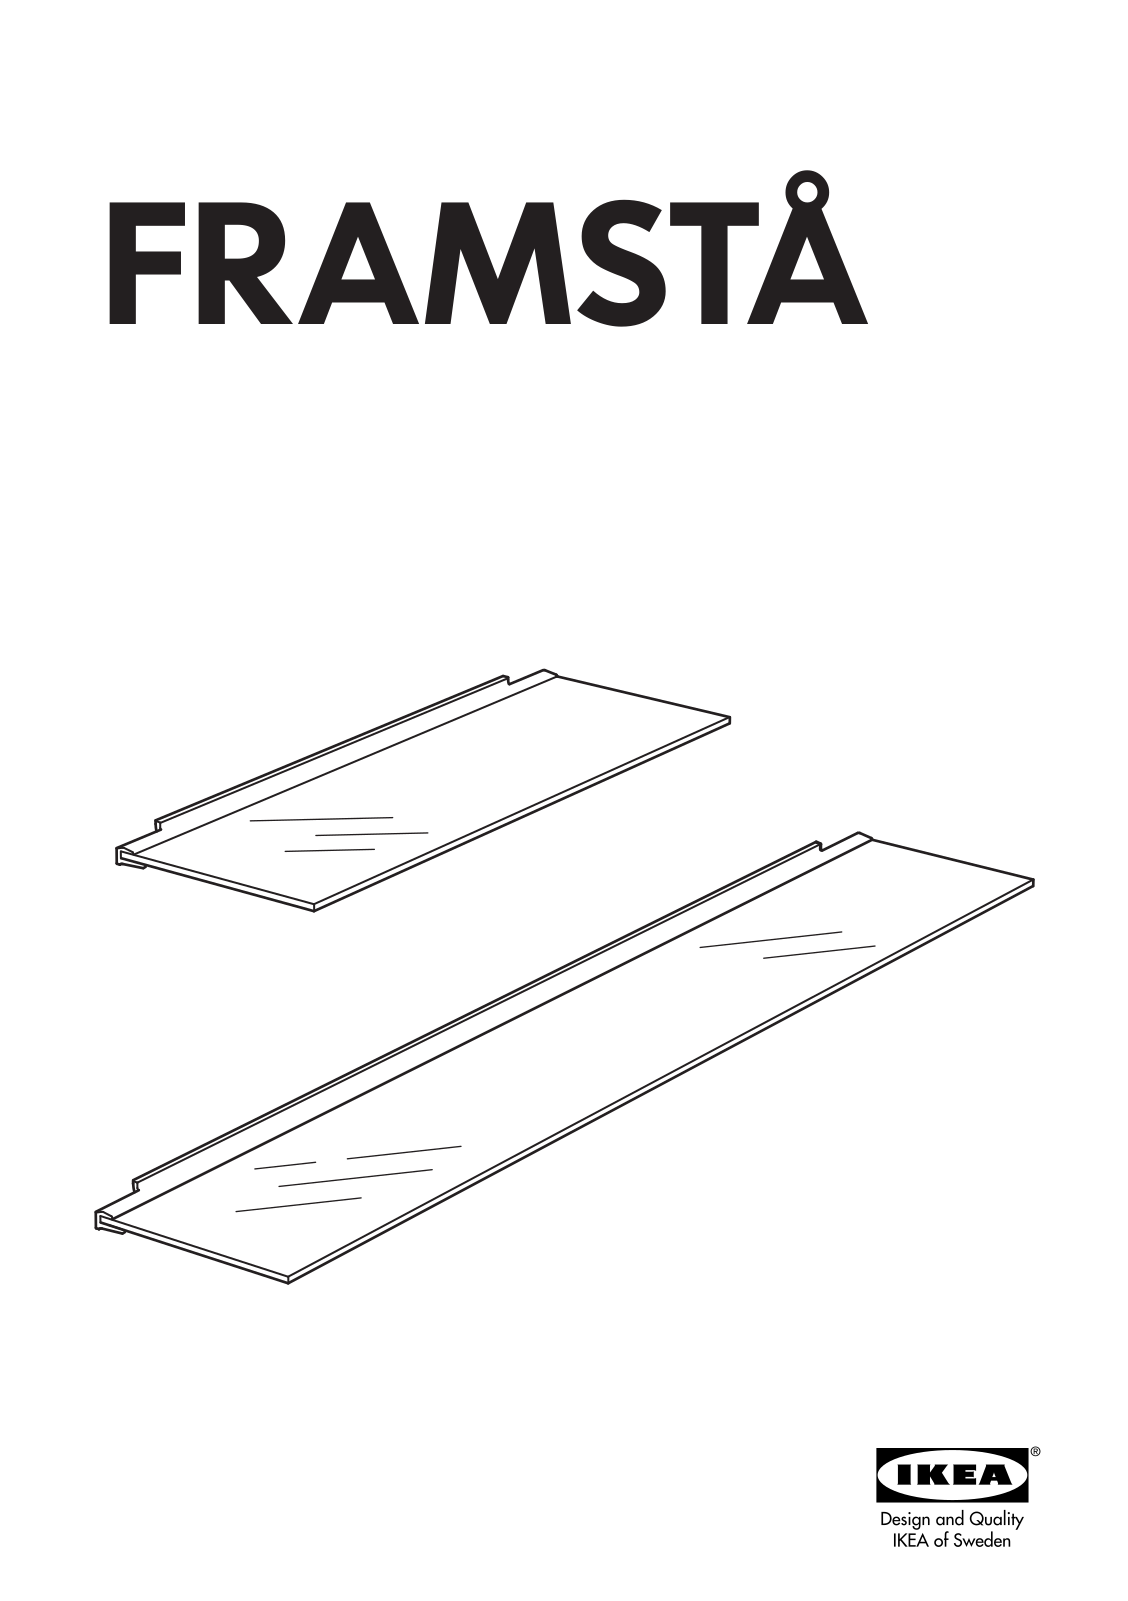 IKEA FRAMSTÅ GLASS SHELF User Manual